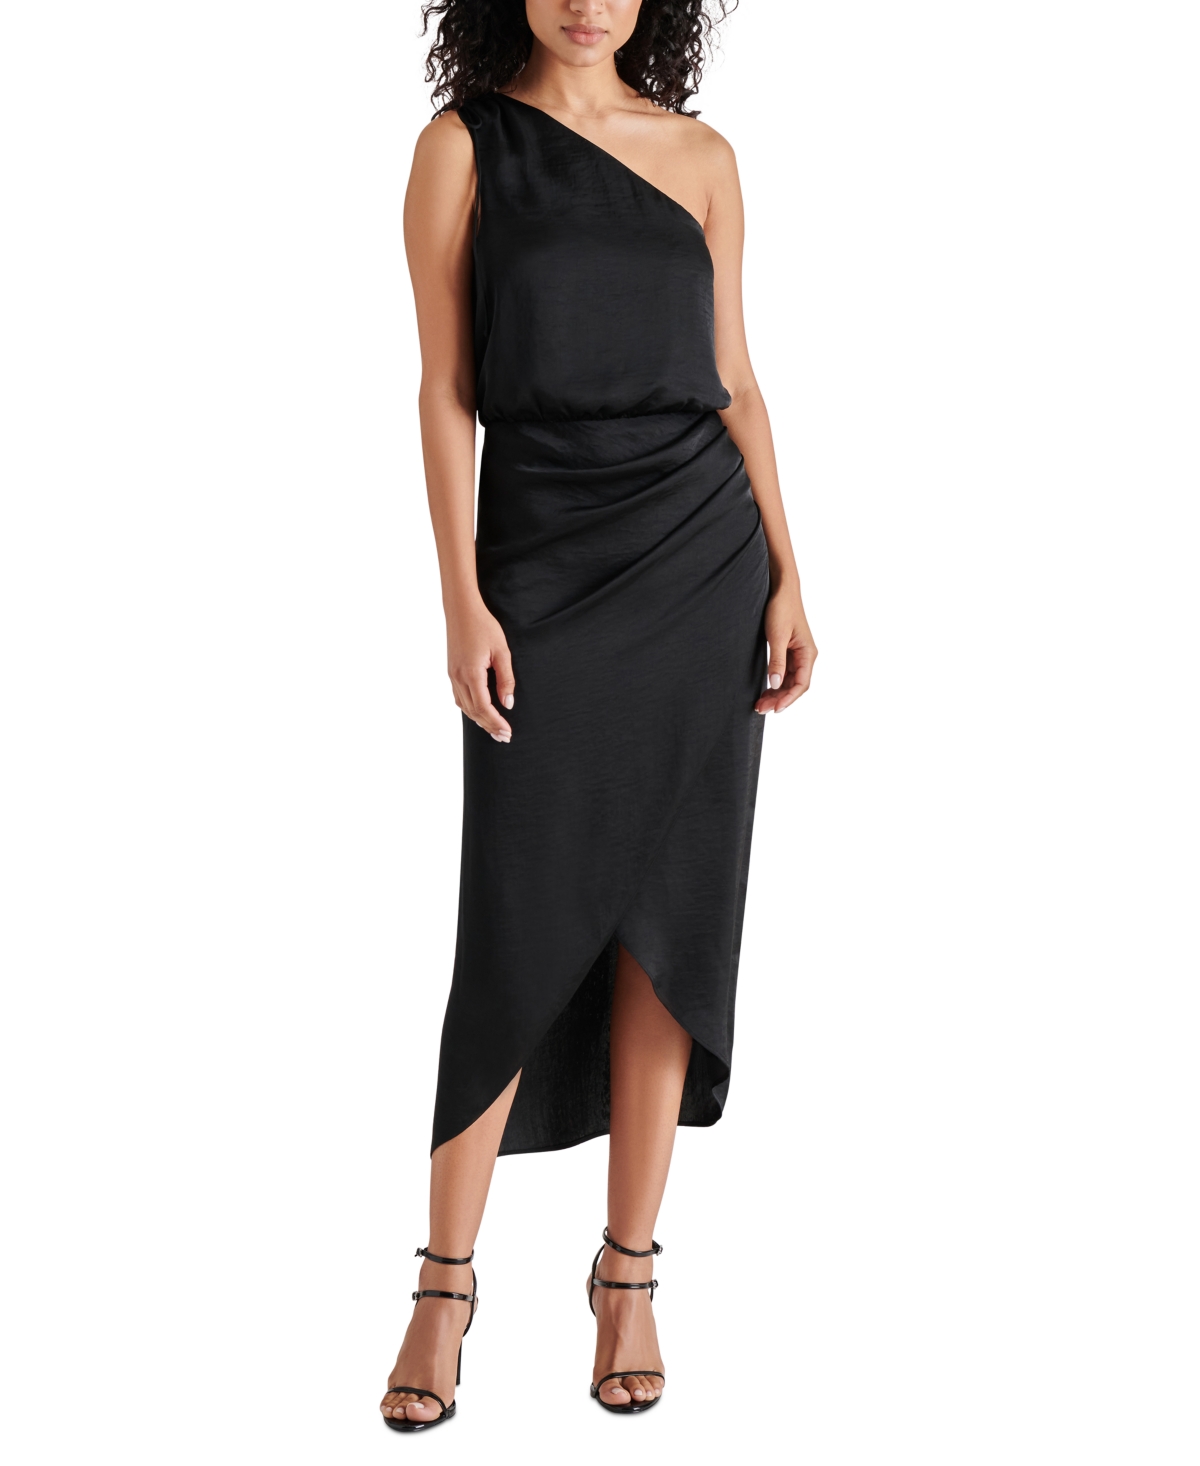 Women's Adele One-Shoulder Ruched Dress - Black